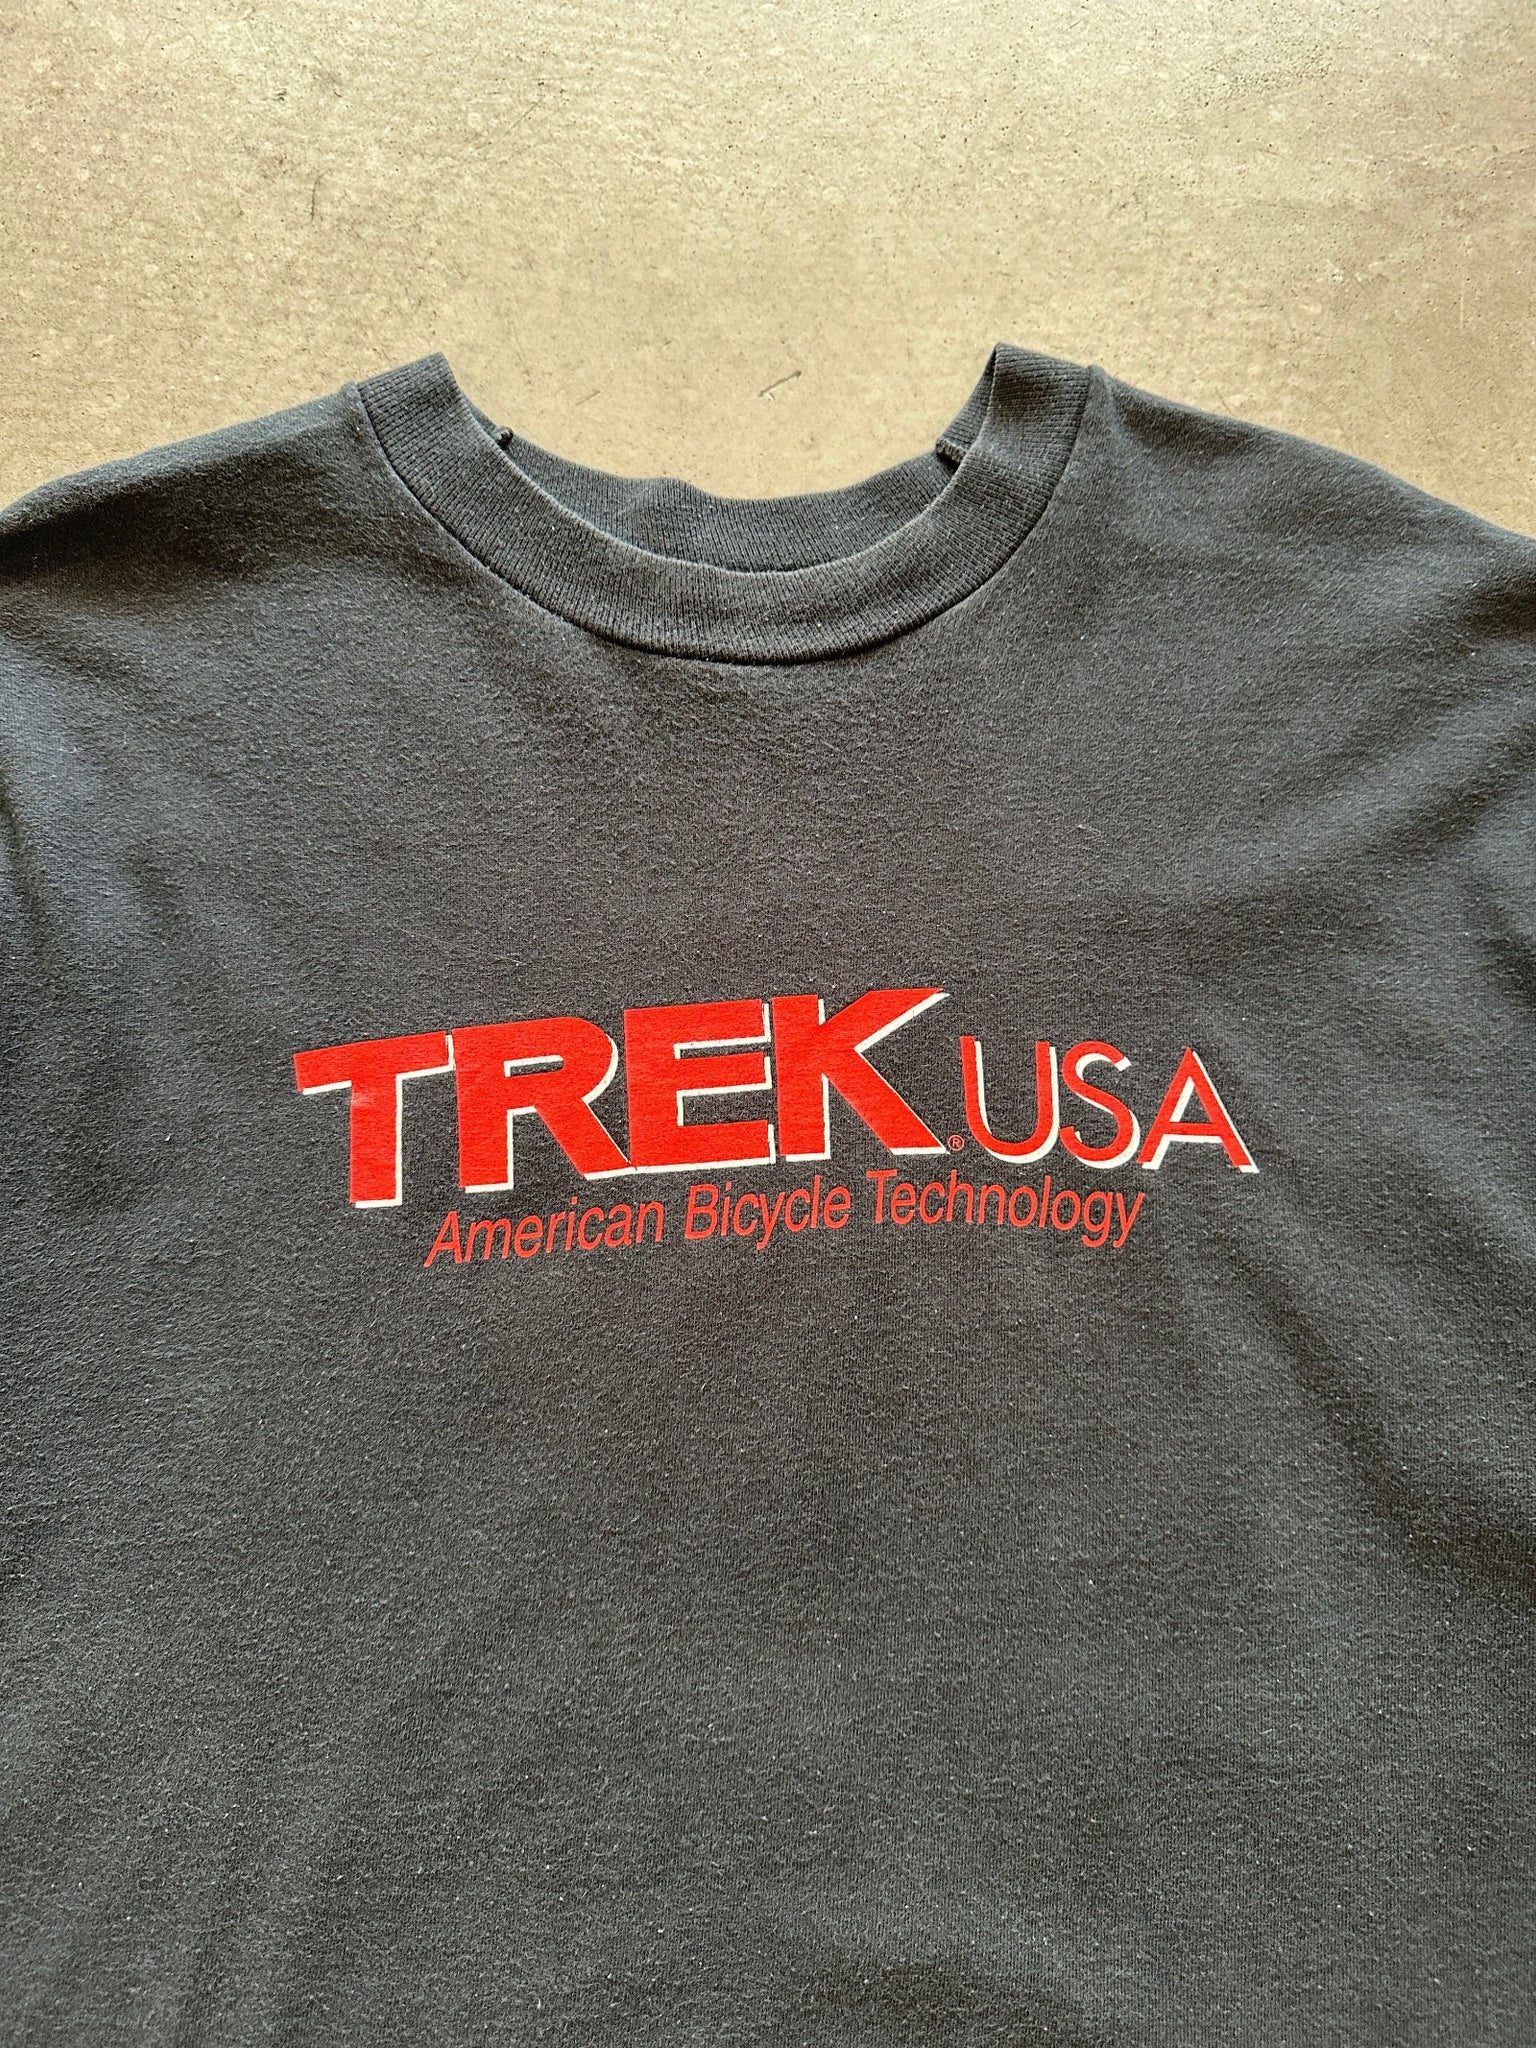 1990’s Trek USA T-Shirt - XL